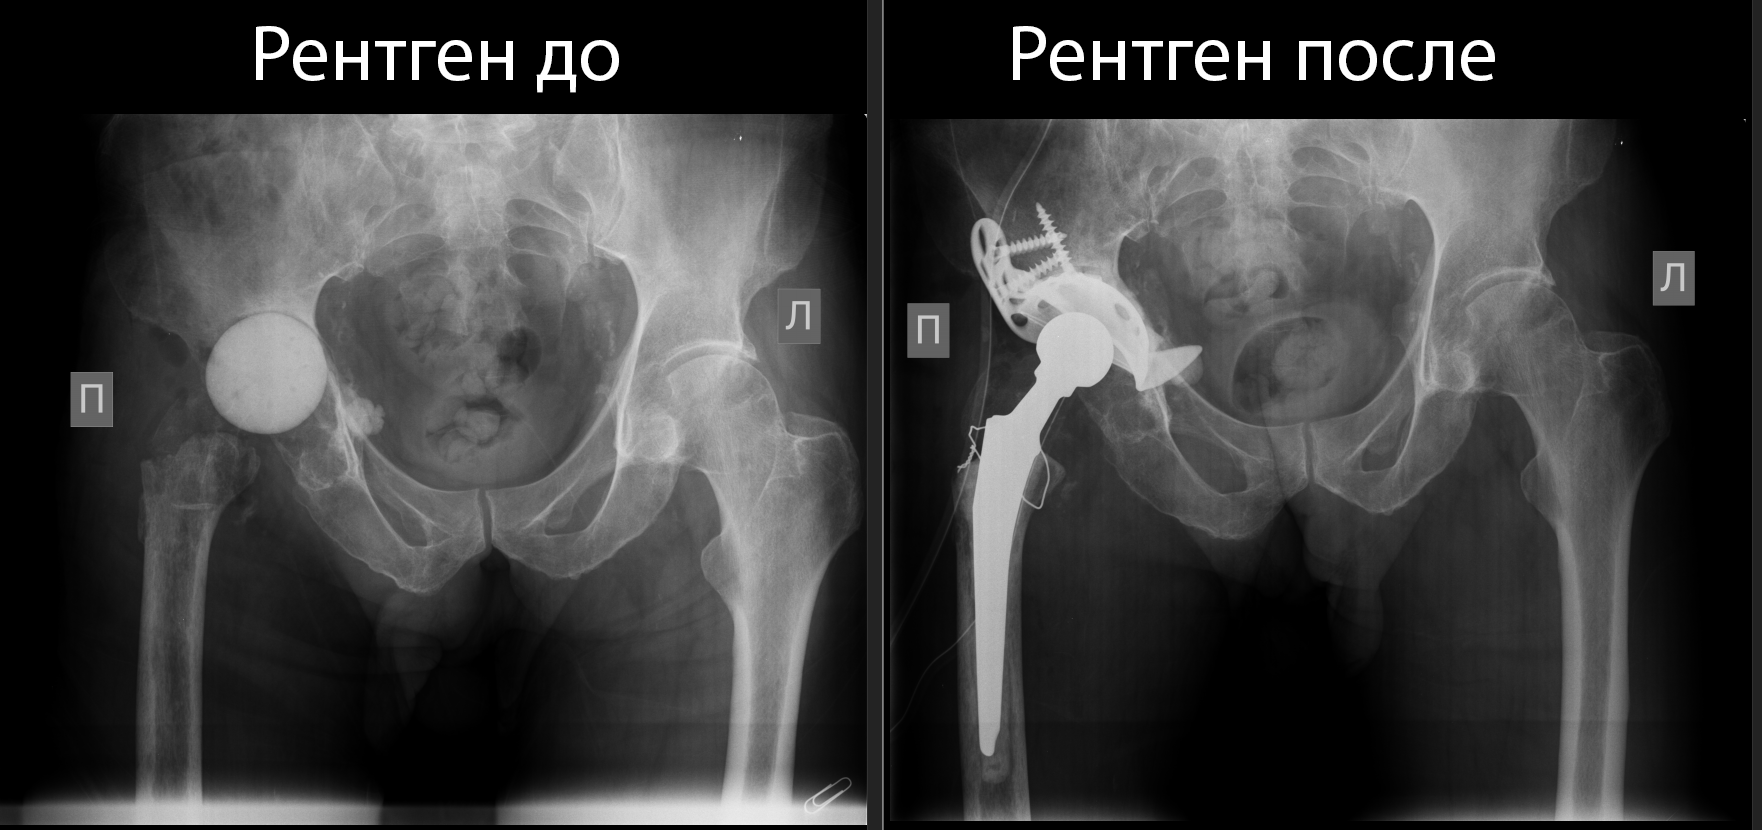 Врачи ФГБУ «СПб НИИФ» выполнили ревизионное эндопротезирование правого тазобедренного сустава